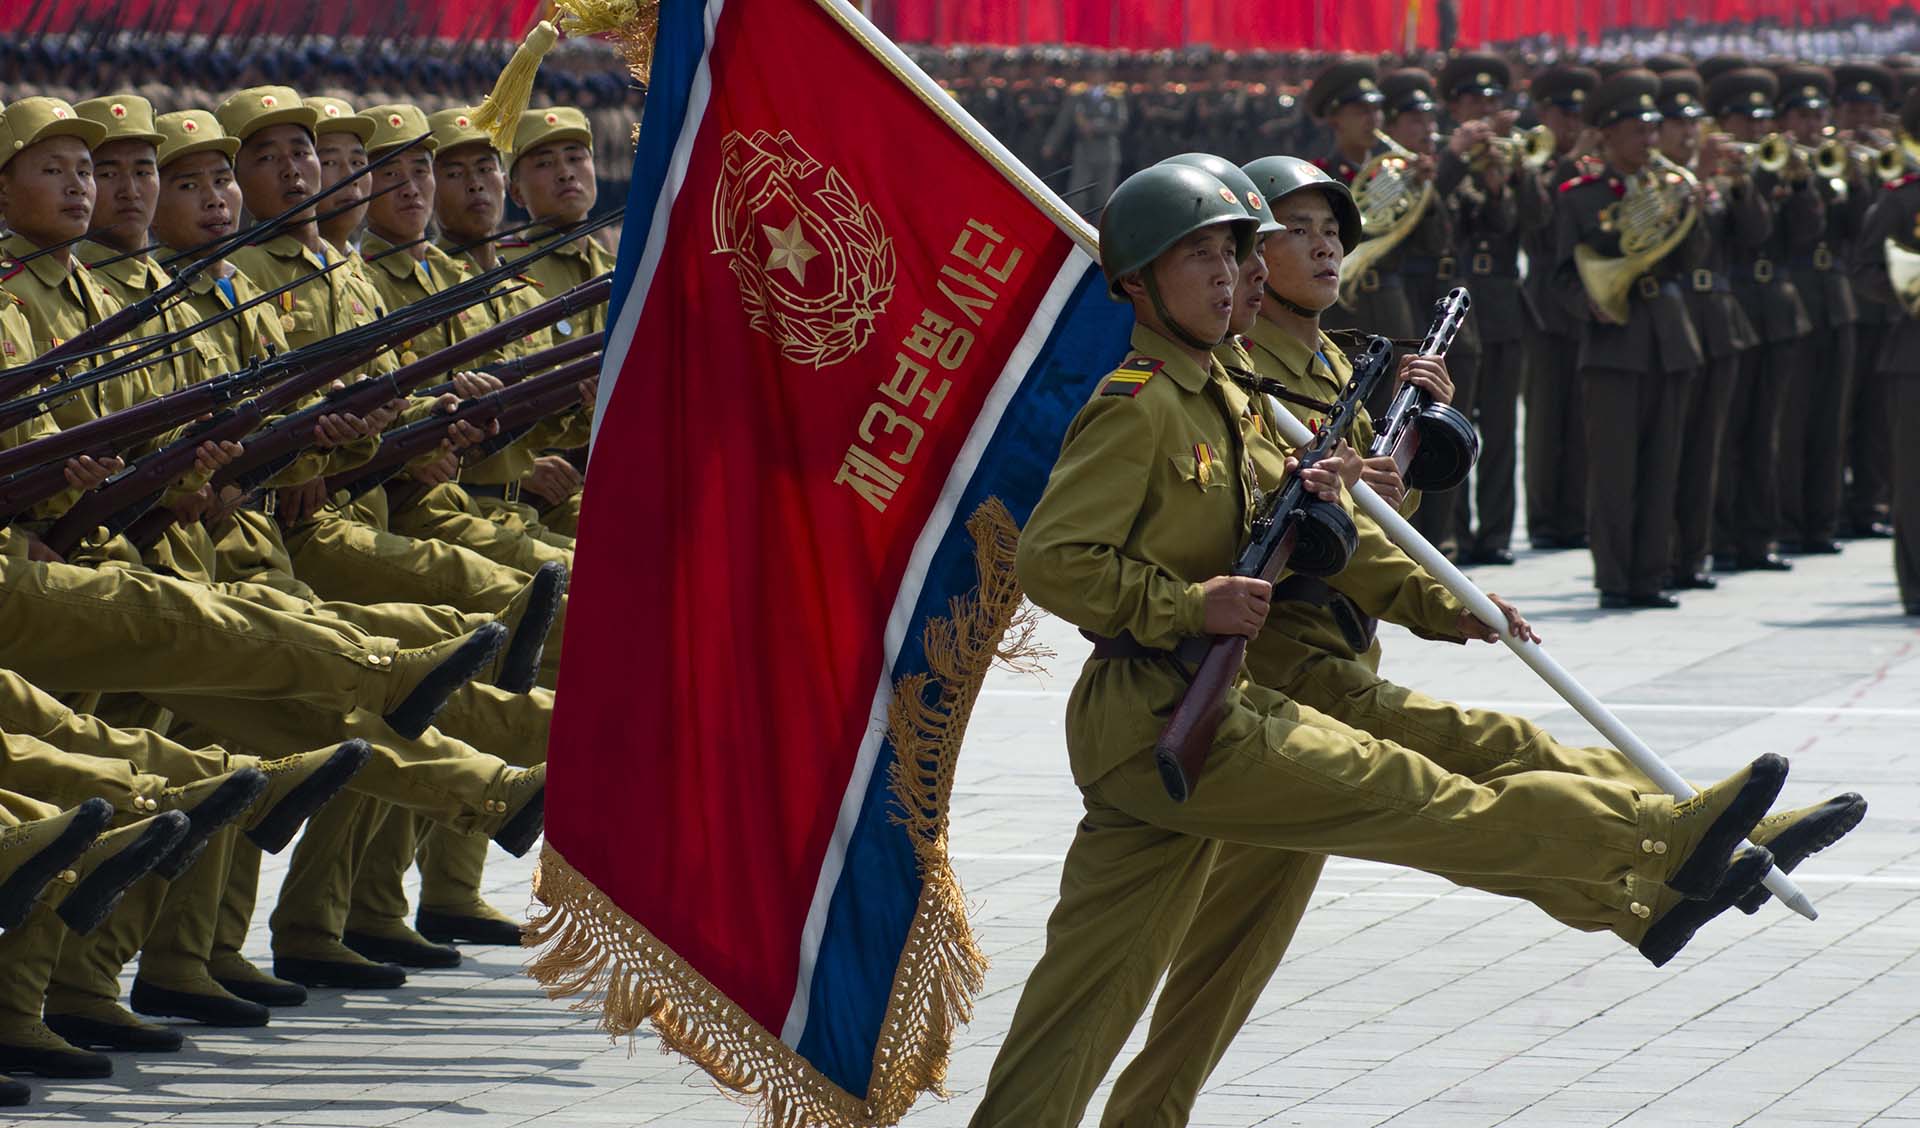 Nordkoreanische Truppen in der Ukraine könnten die Machtverhältnisse in Europa verändern